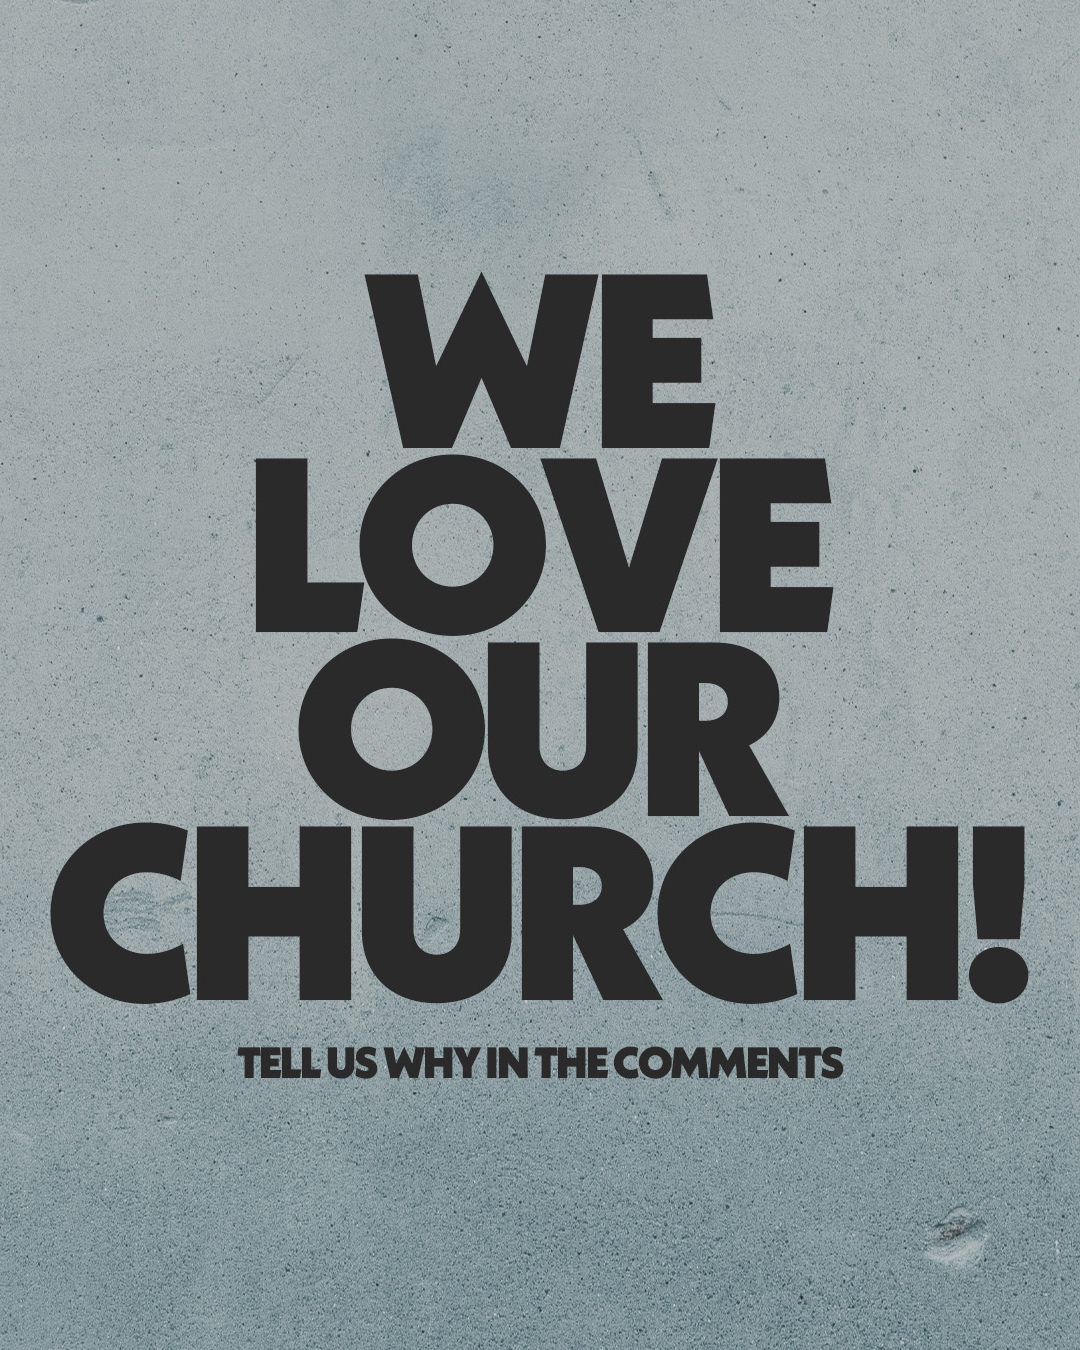 We love our church